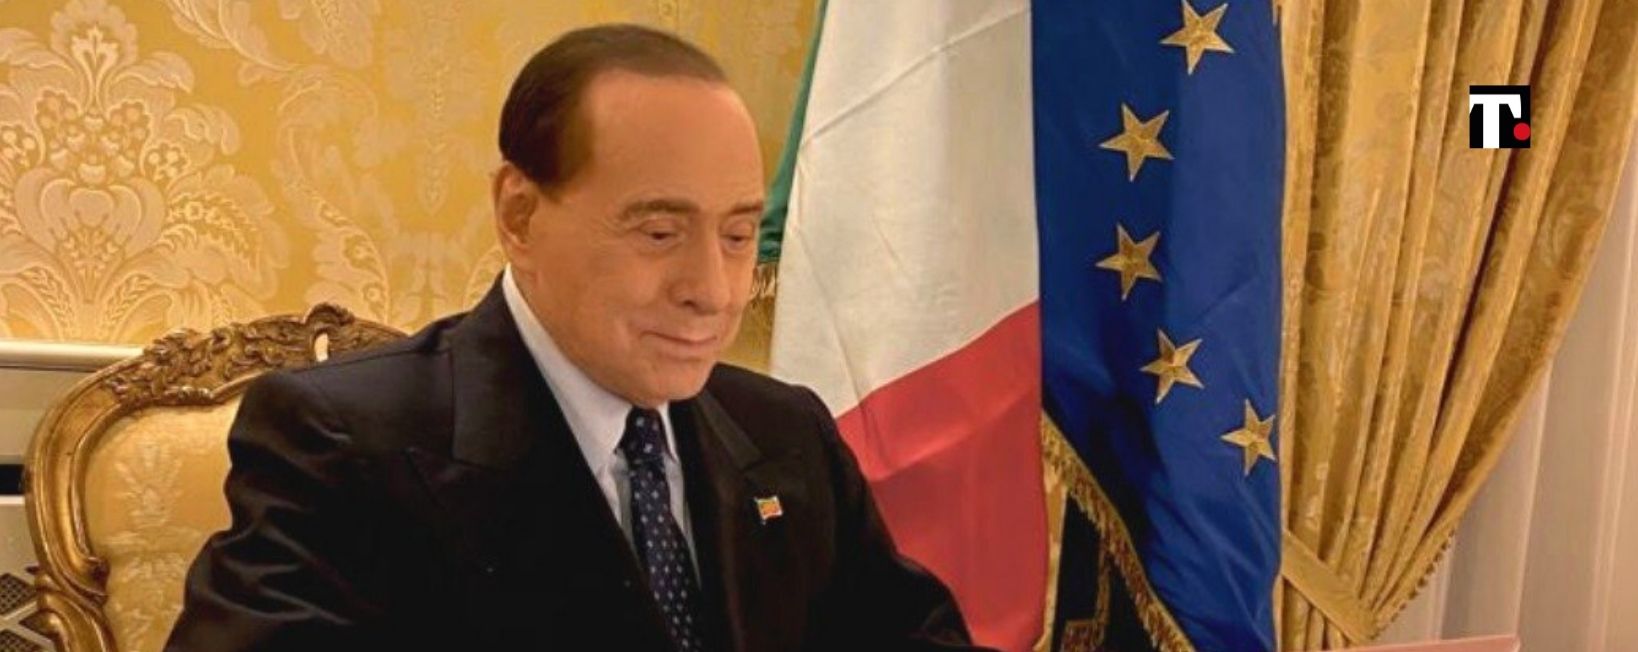 Quirinale Berlusconi ricoverato